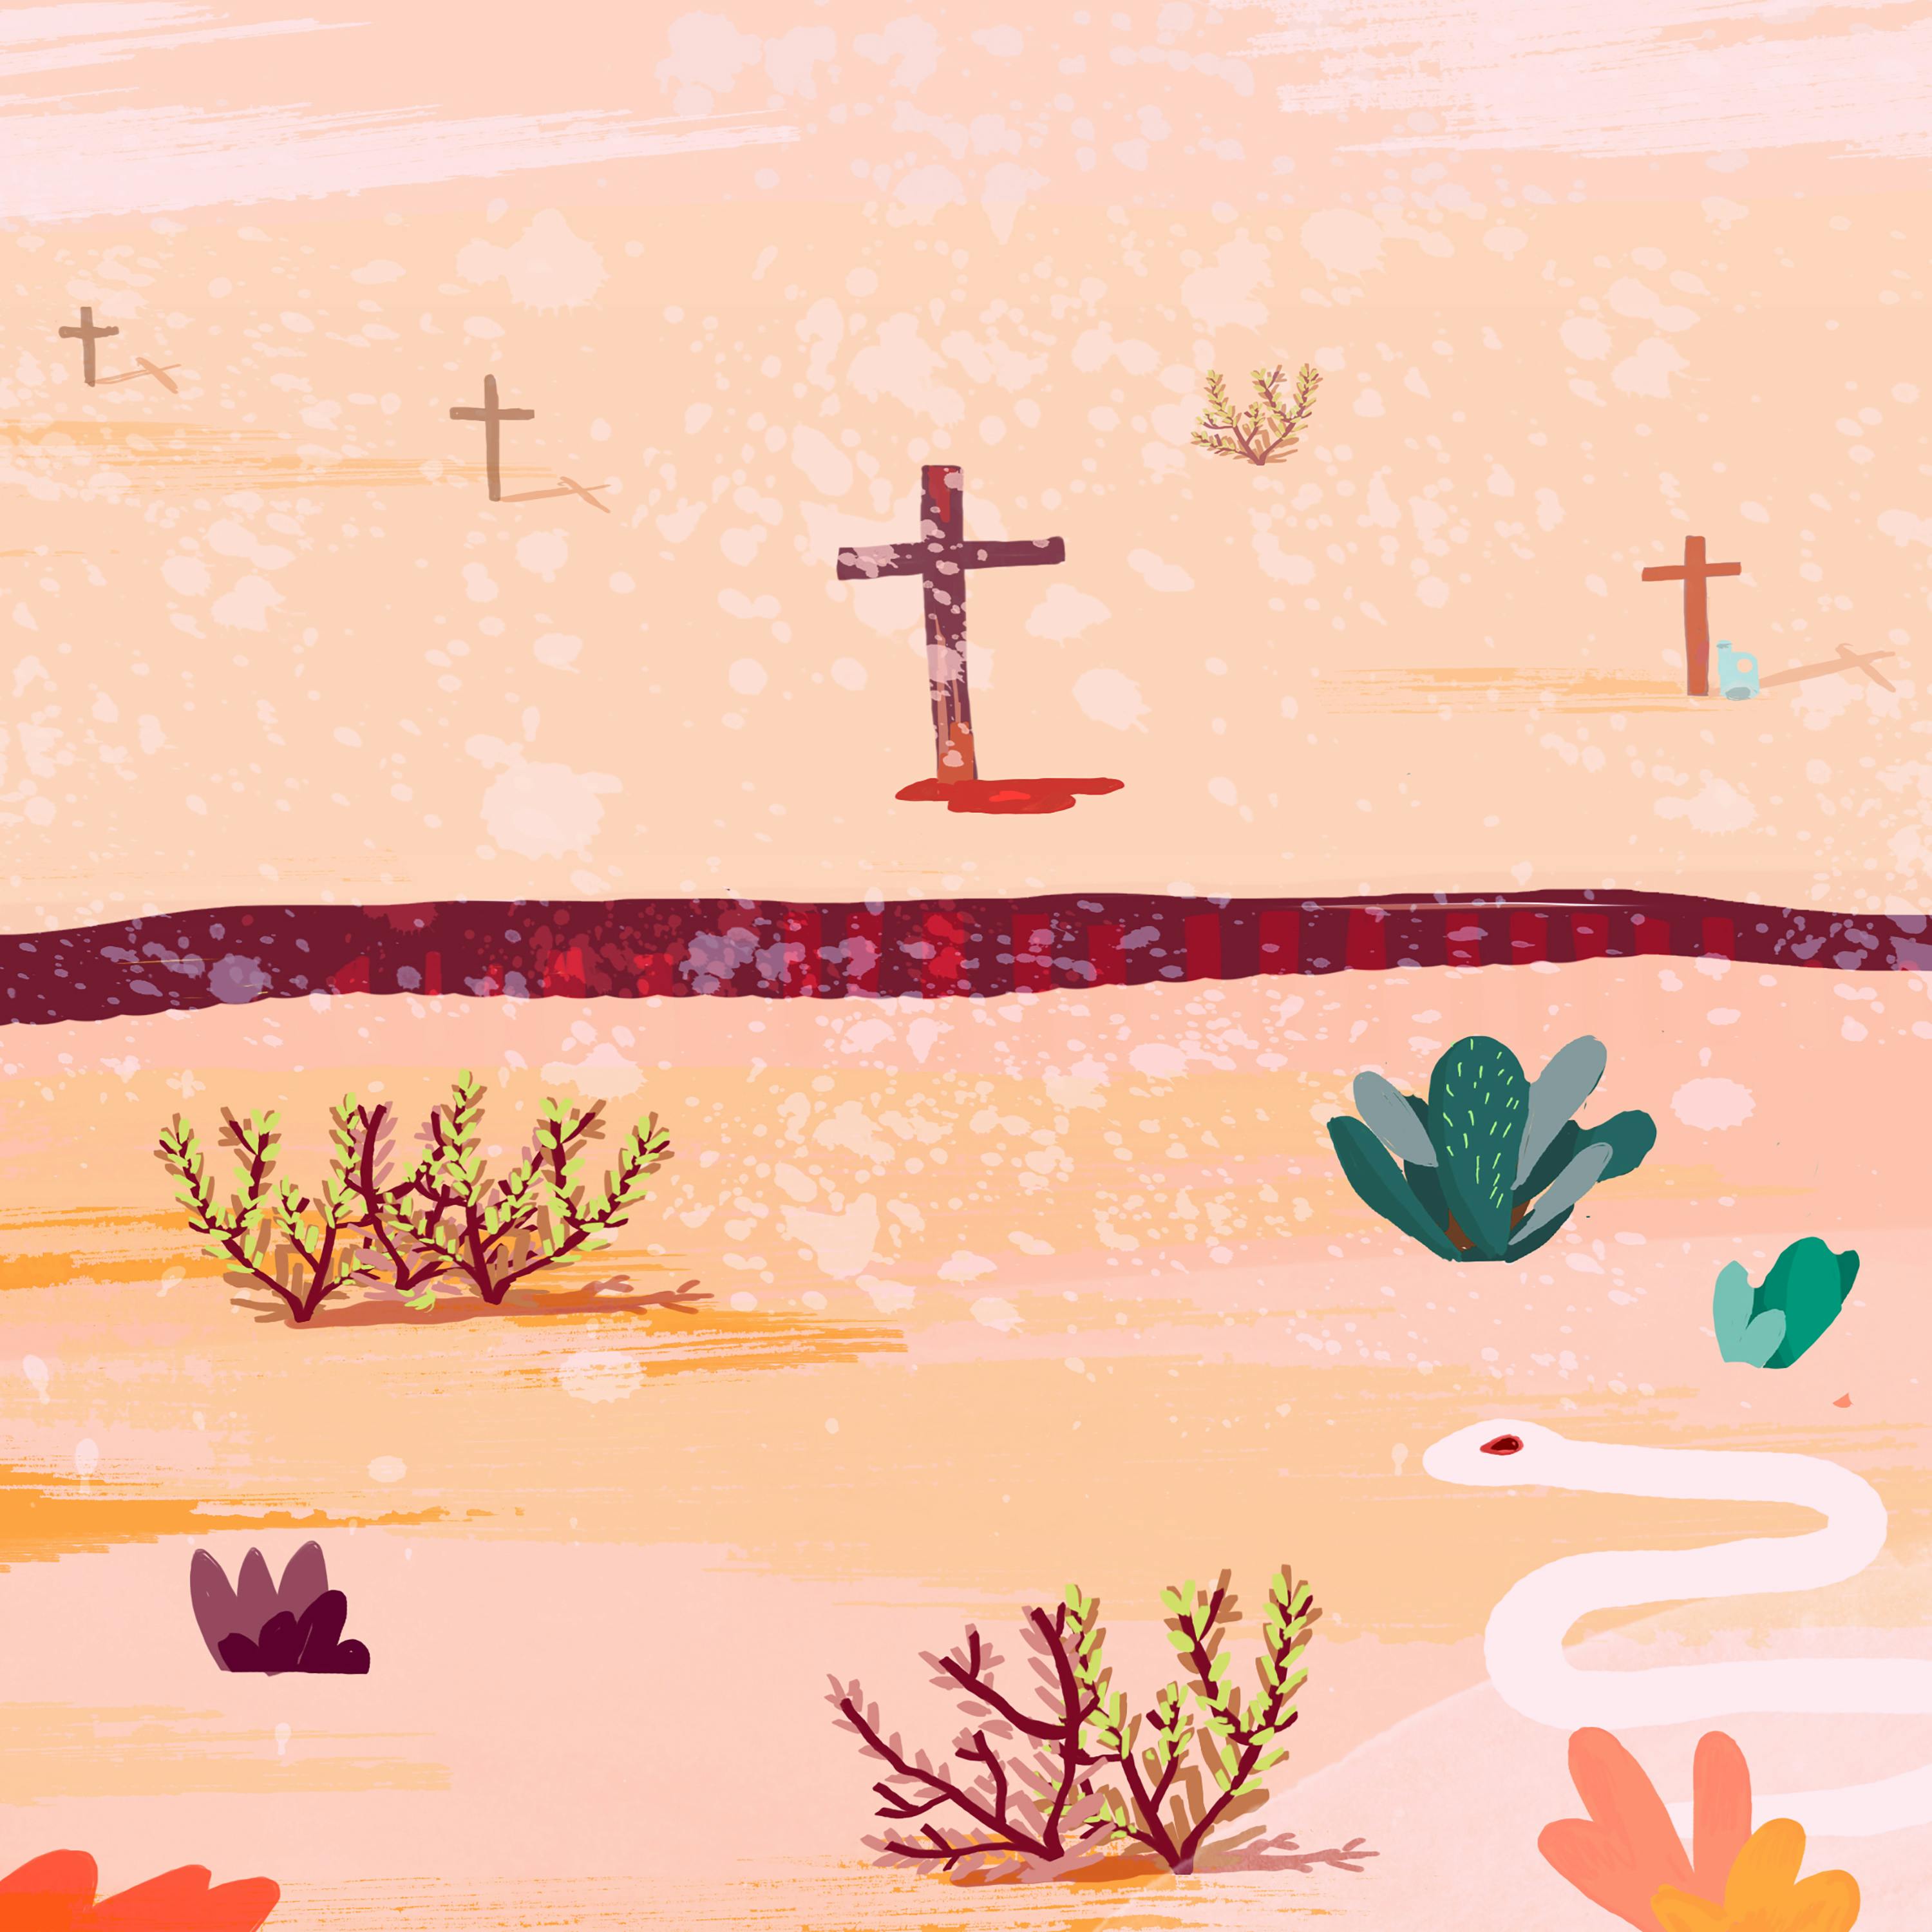 Cruces en el desierto